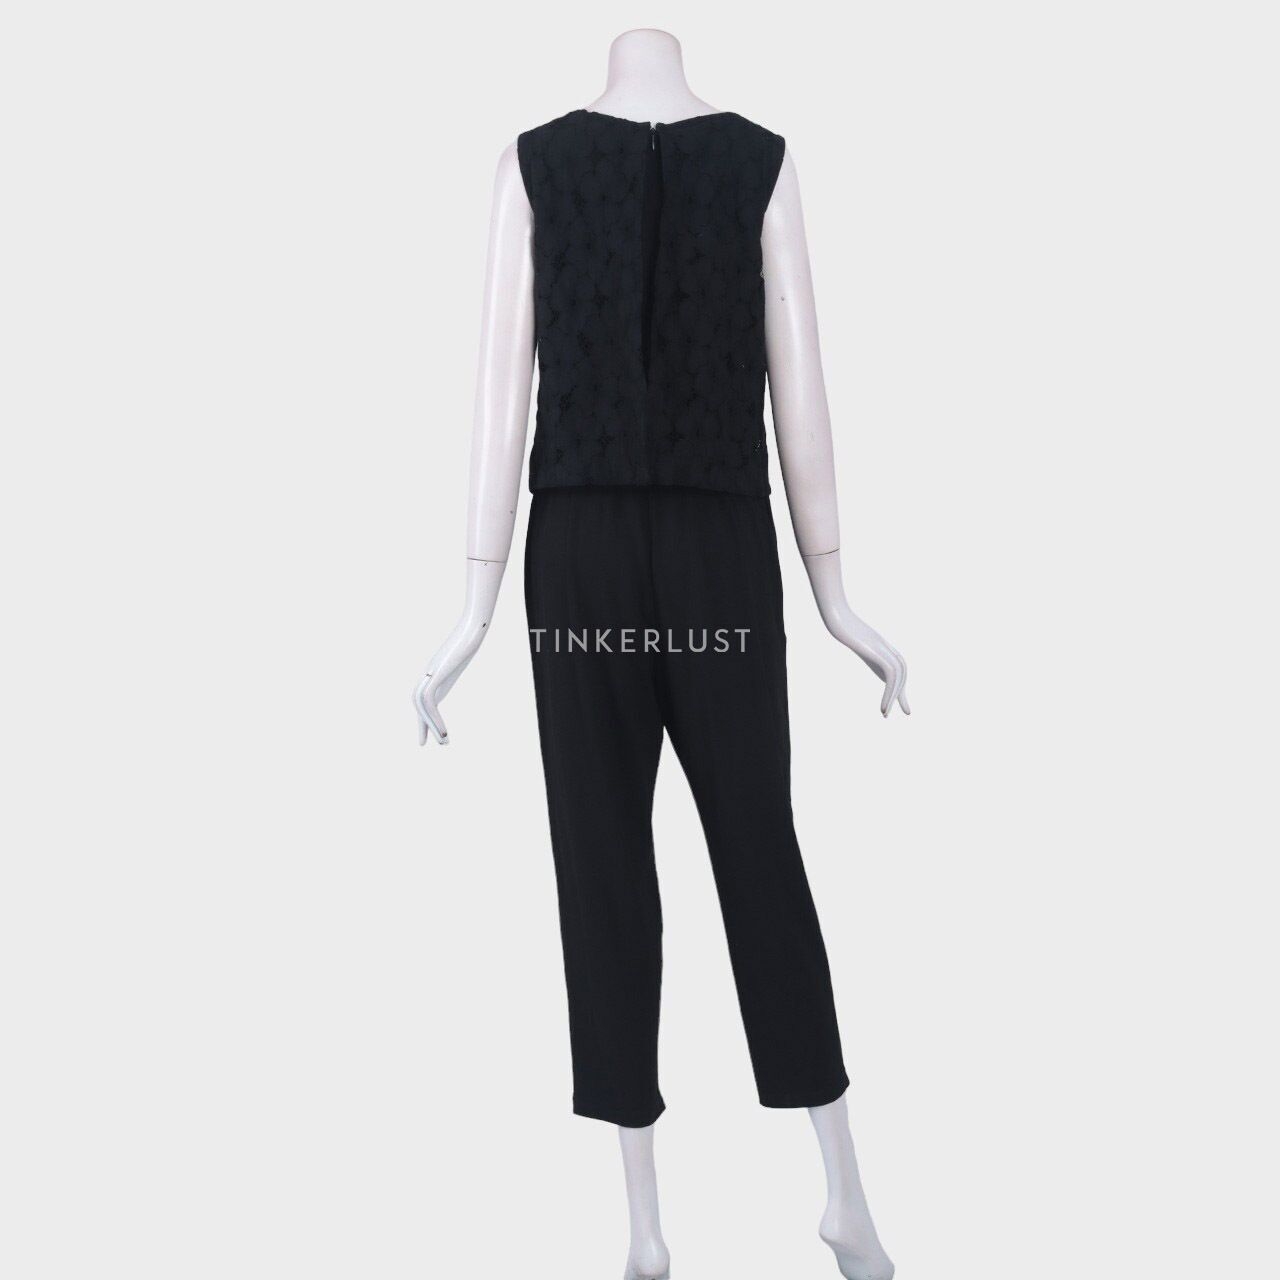 UNIQLO Black Lace Jumpsuit